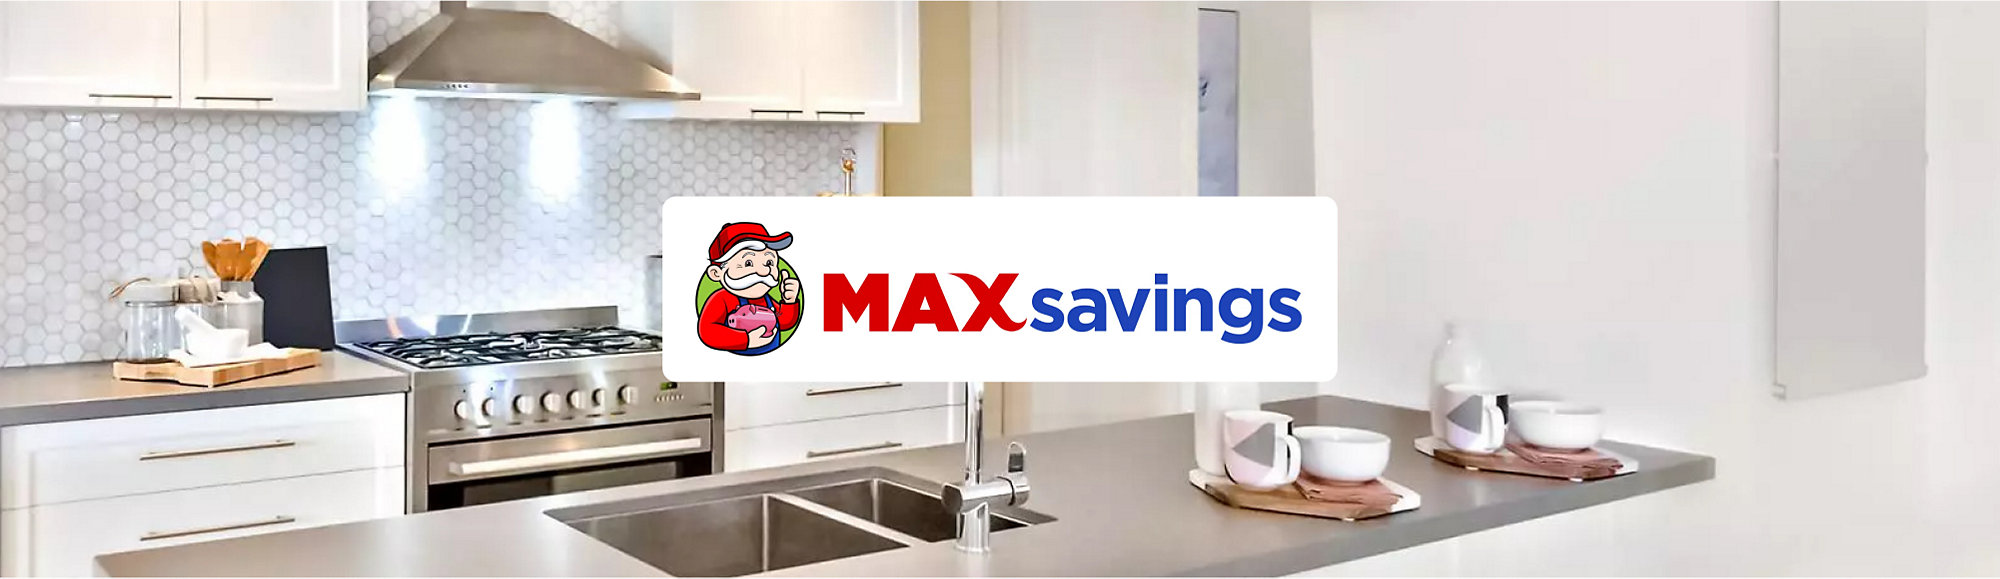 MAXsavings_Logo_Full_Color